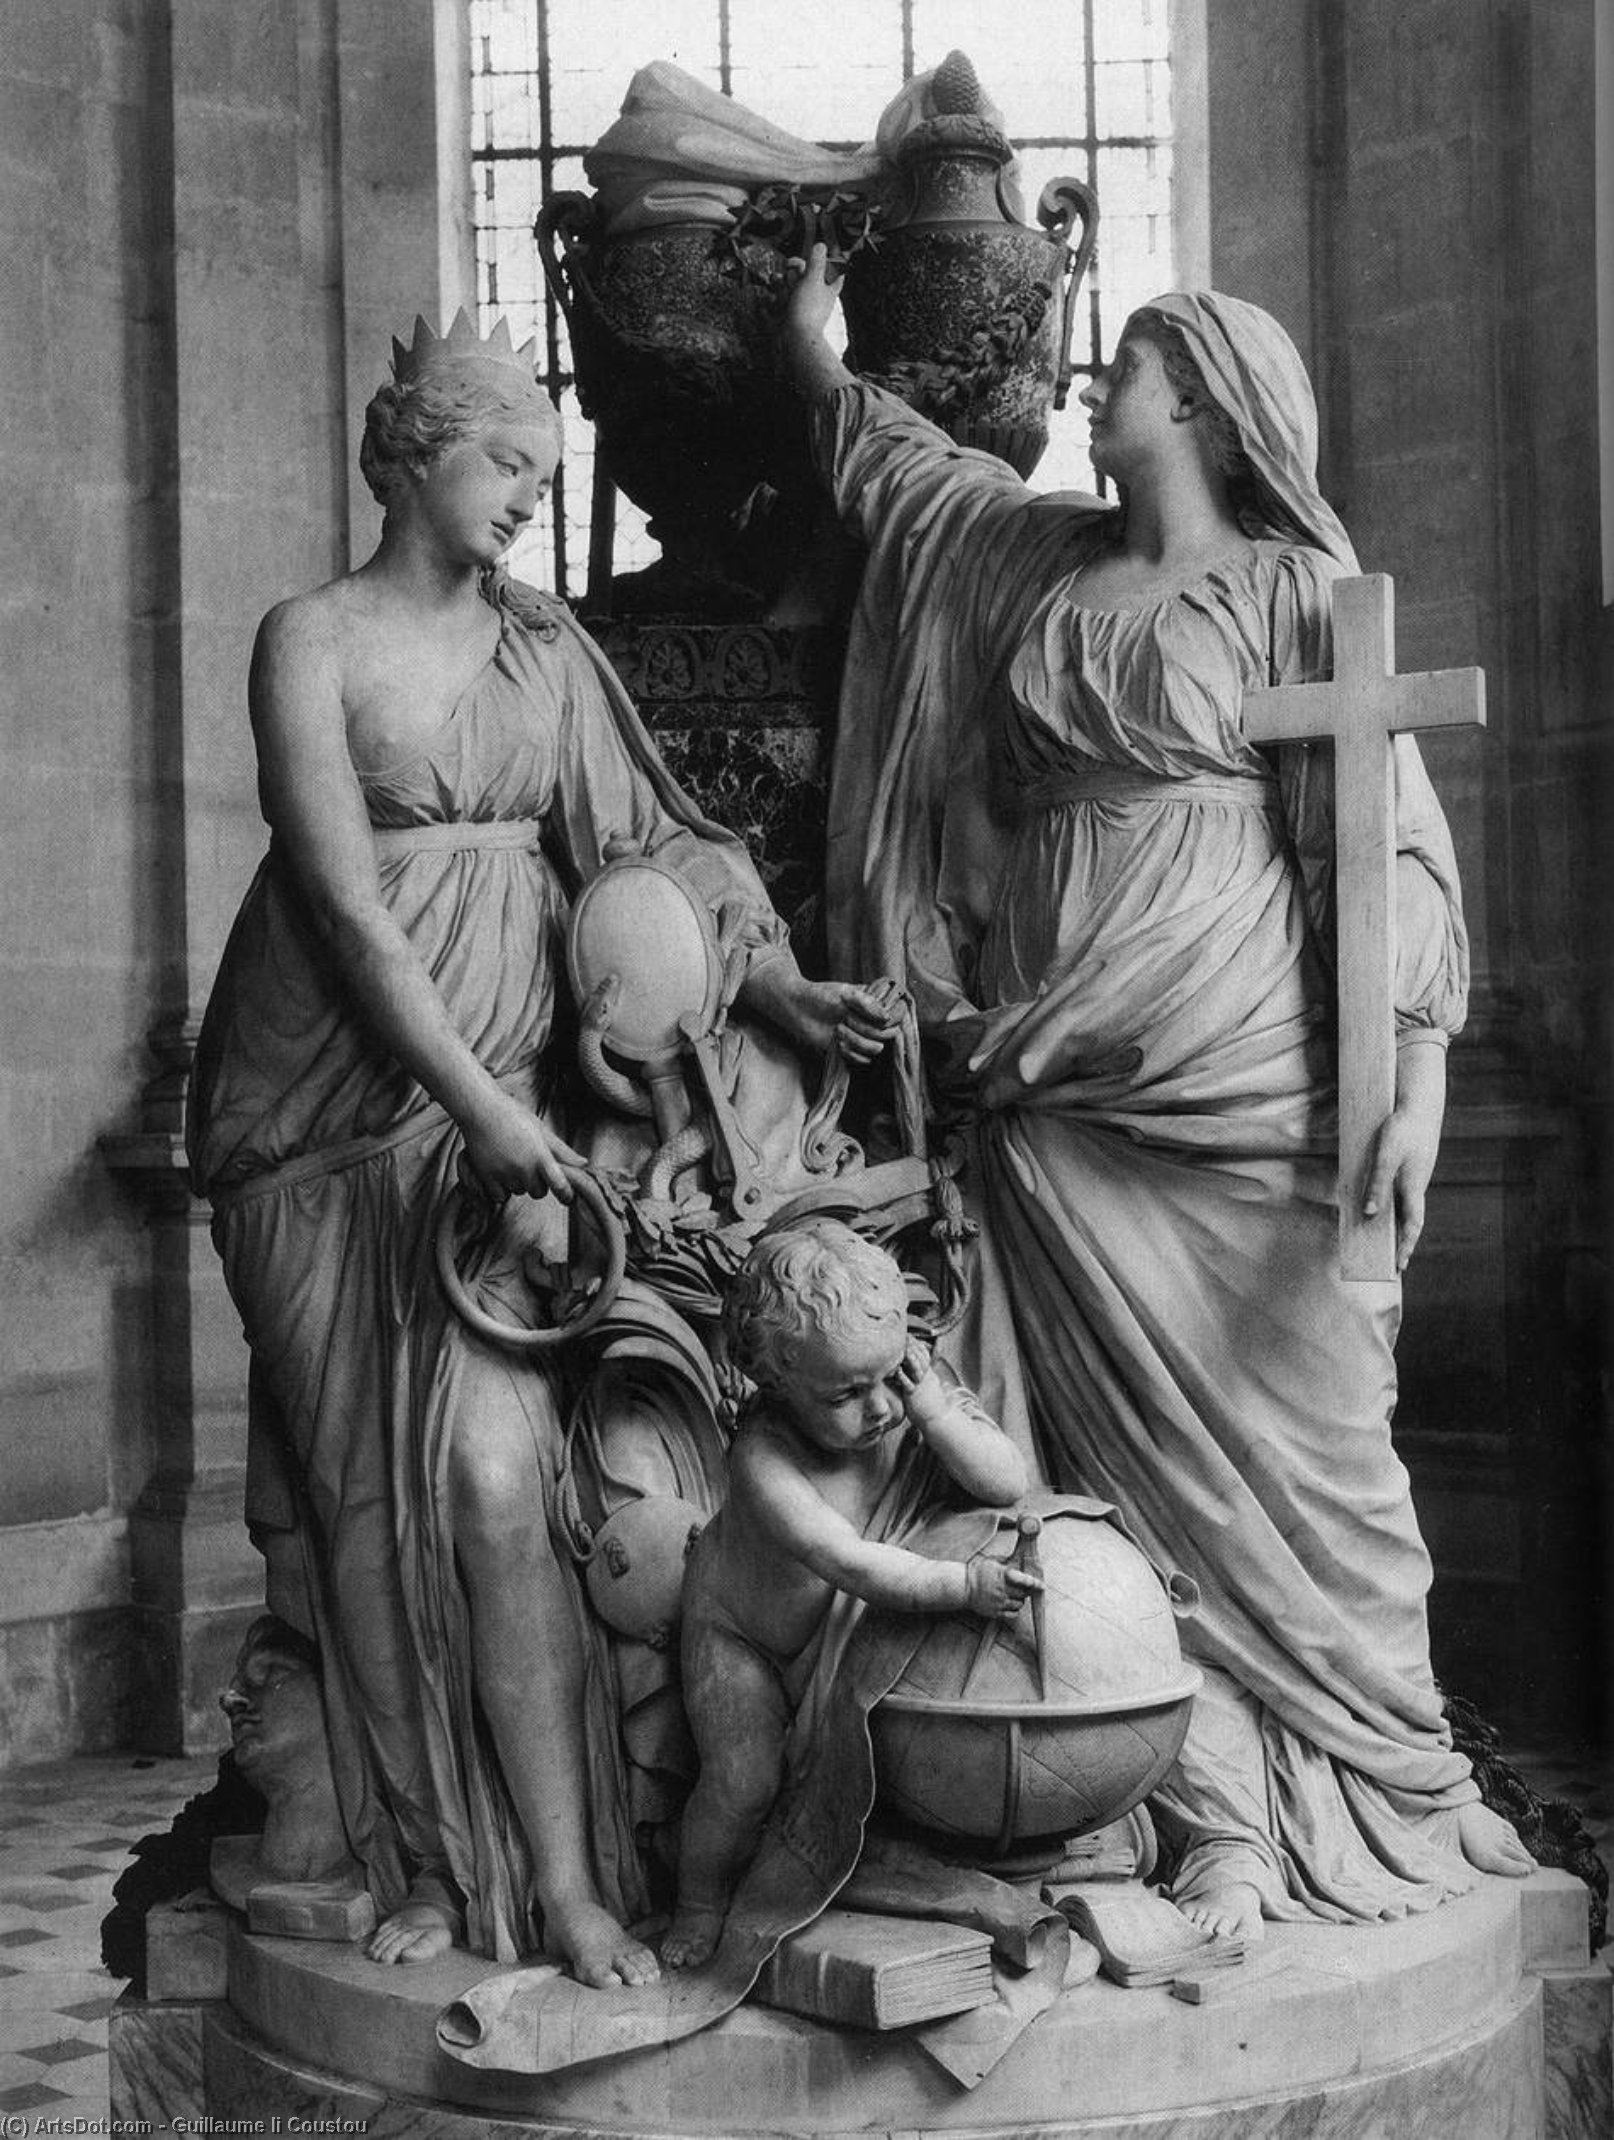 WikiOO.org - Enciklopedija likovnih umjetnosti - Slikarstvo, umjetnička djela Guillaume Ii Coustou - Monument to the Dauphin